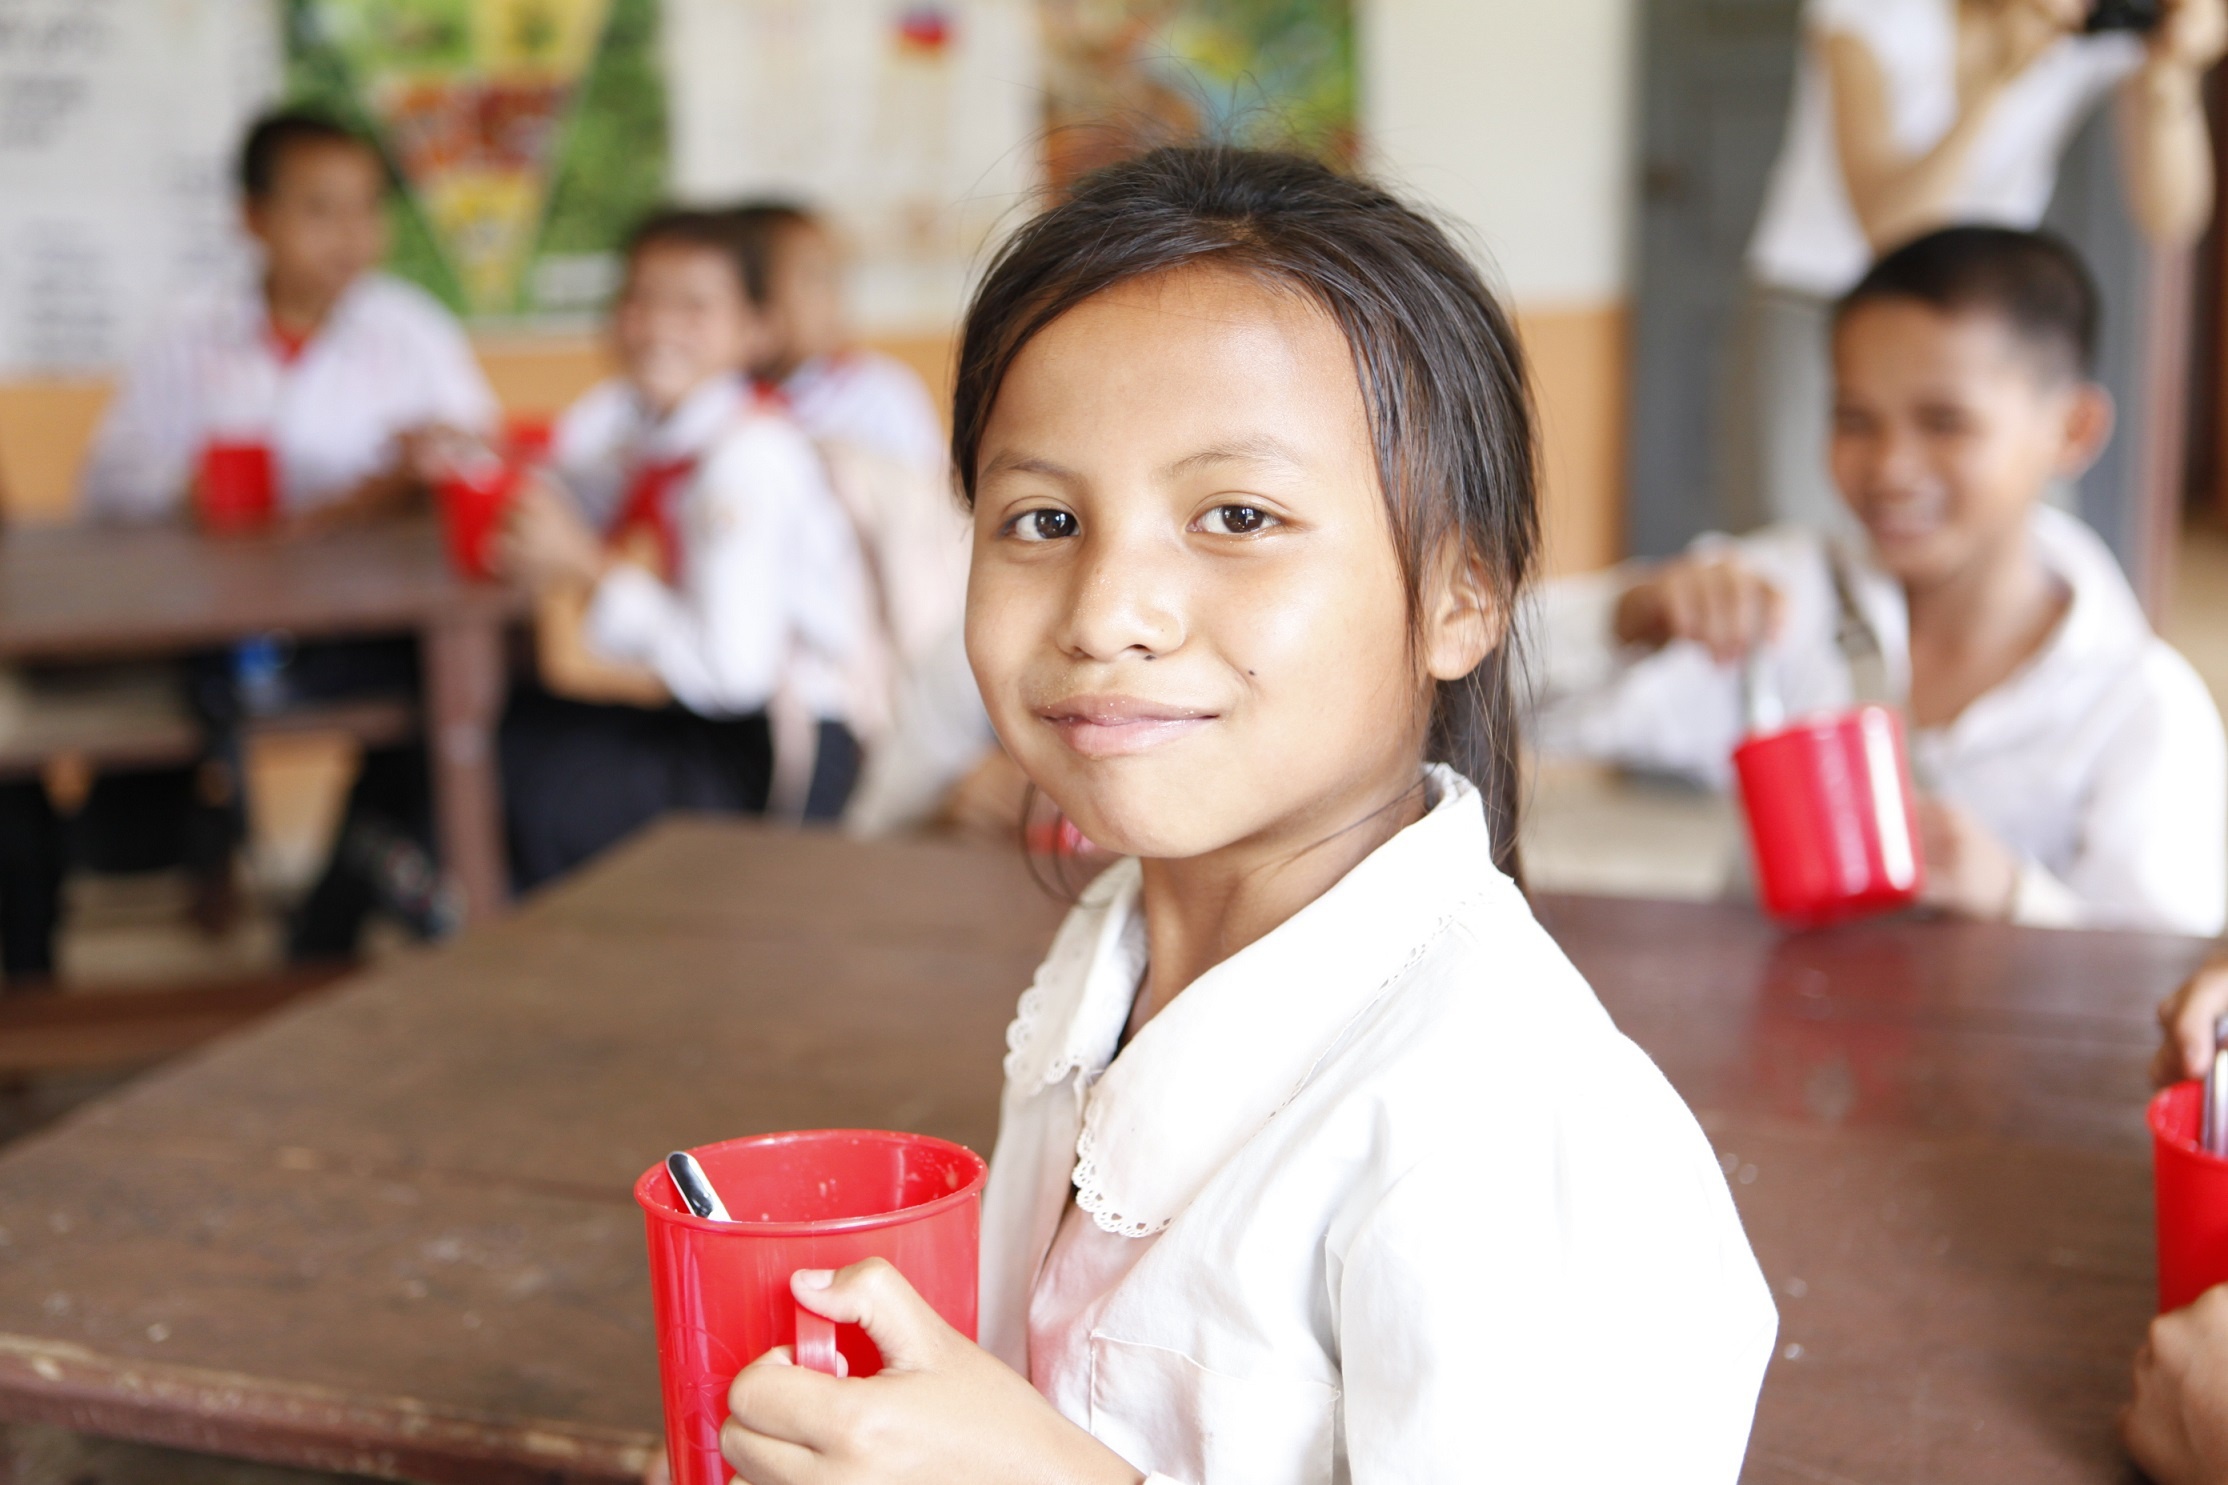 学校給食は飢餓や貧困から救うだけでなく、教育を受ける機会を与え、暮らしを守ることなどにもつながるという